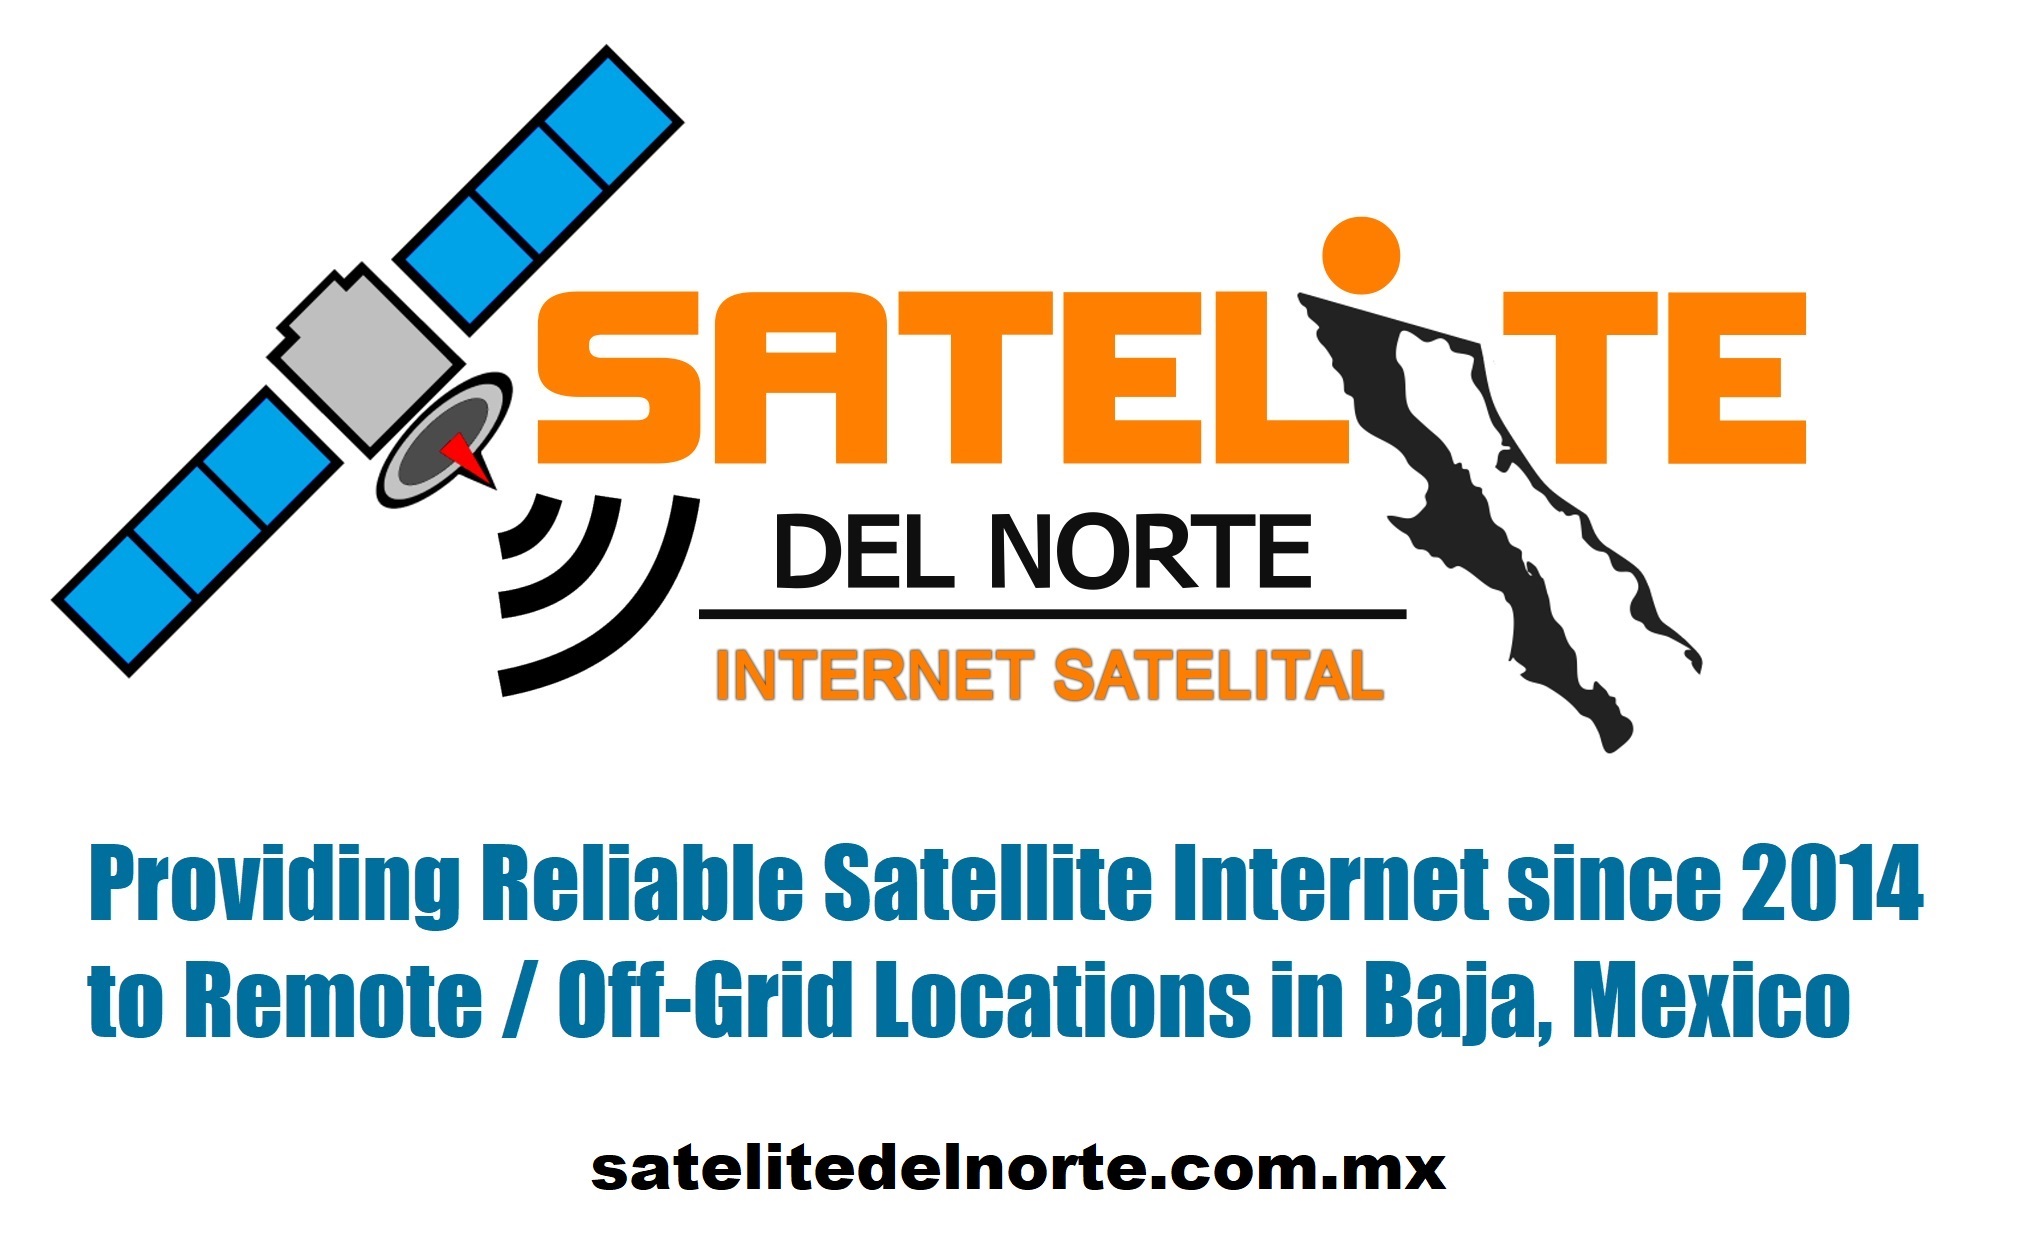 Satelite del Norte - Satellite internet service for off-grid / remote Baja Mexico